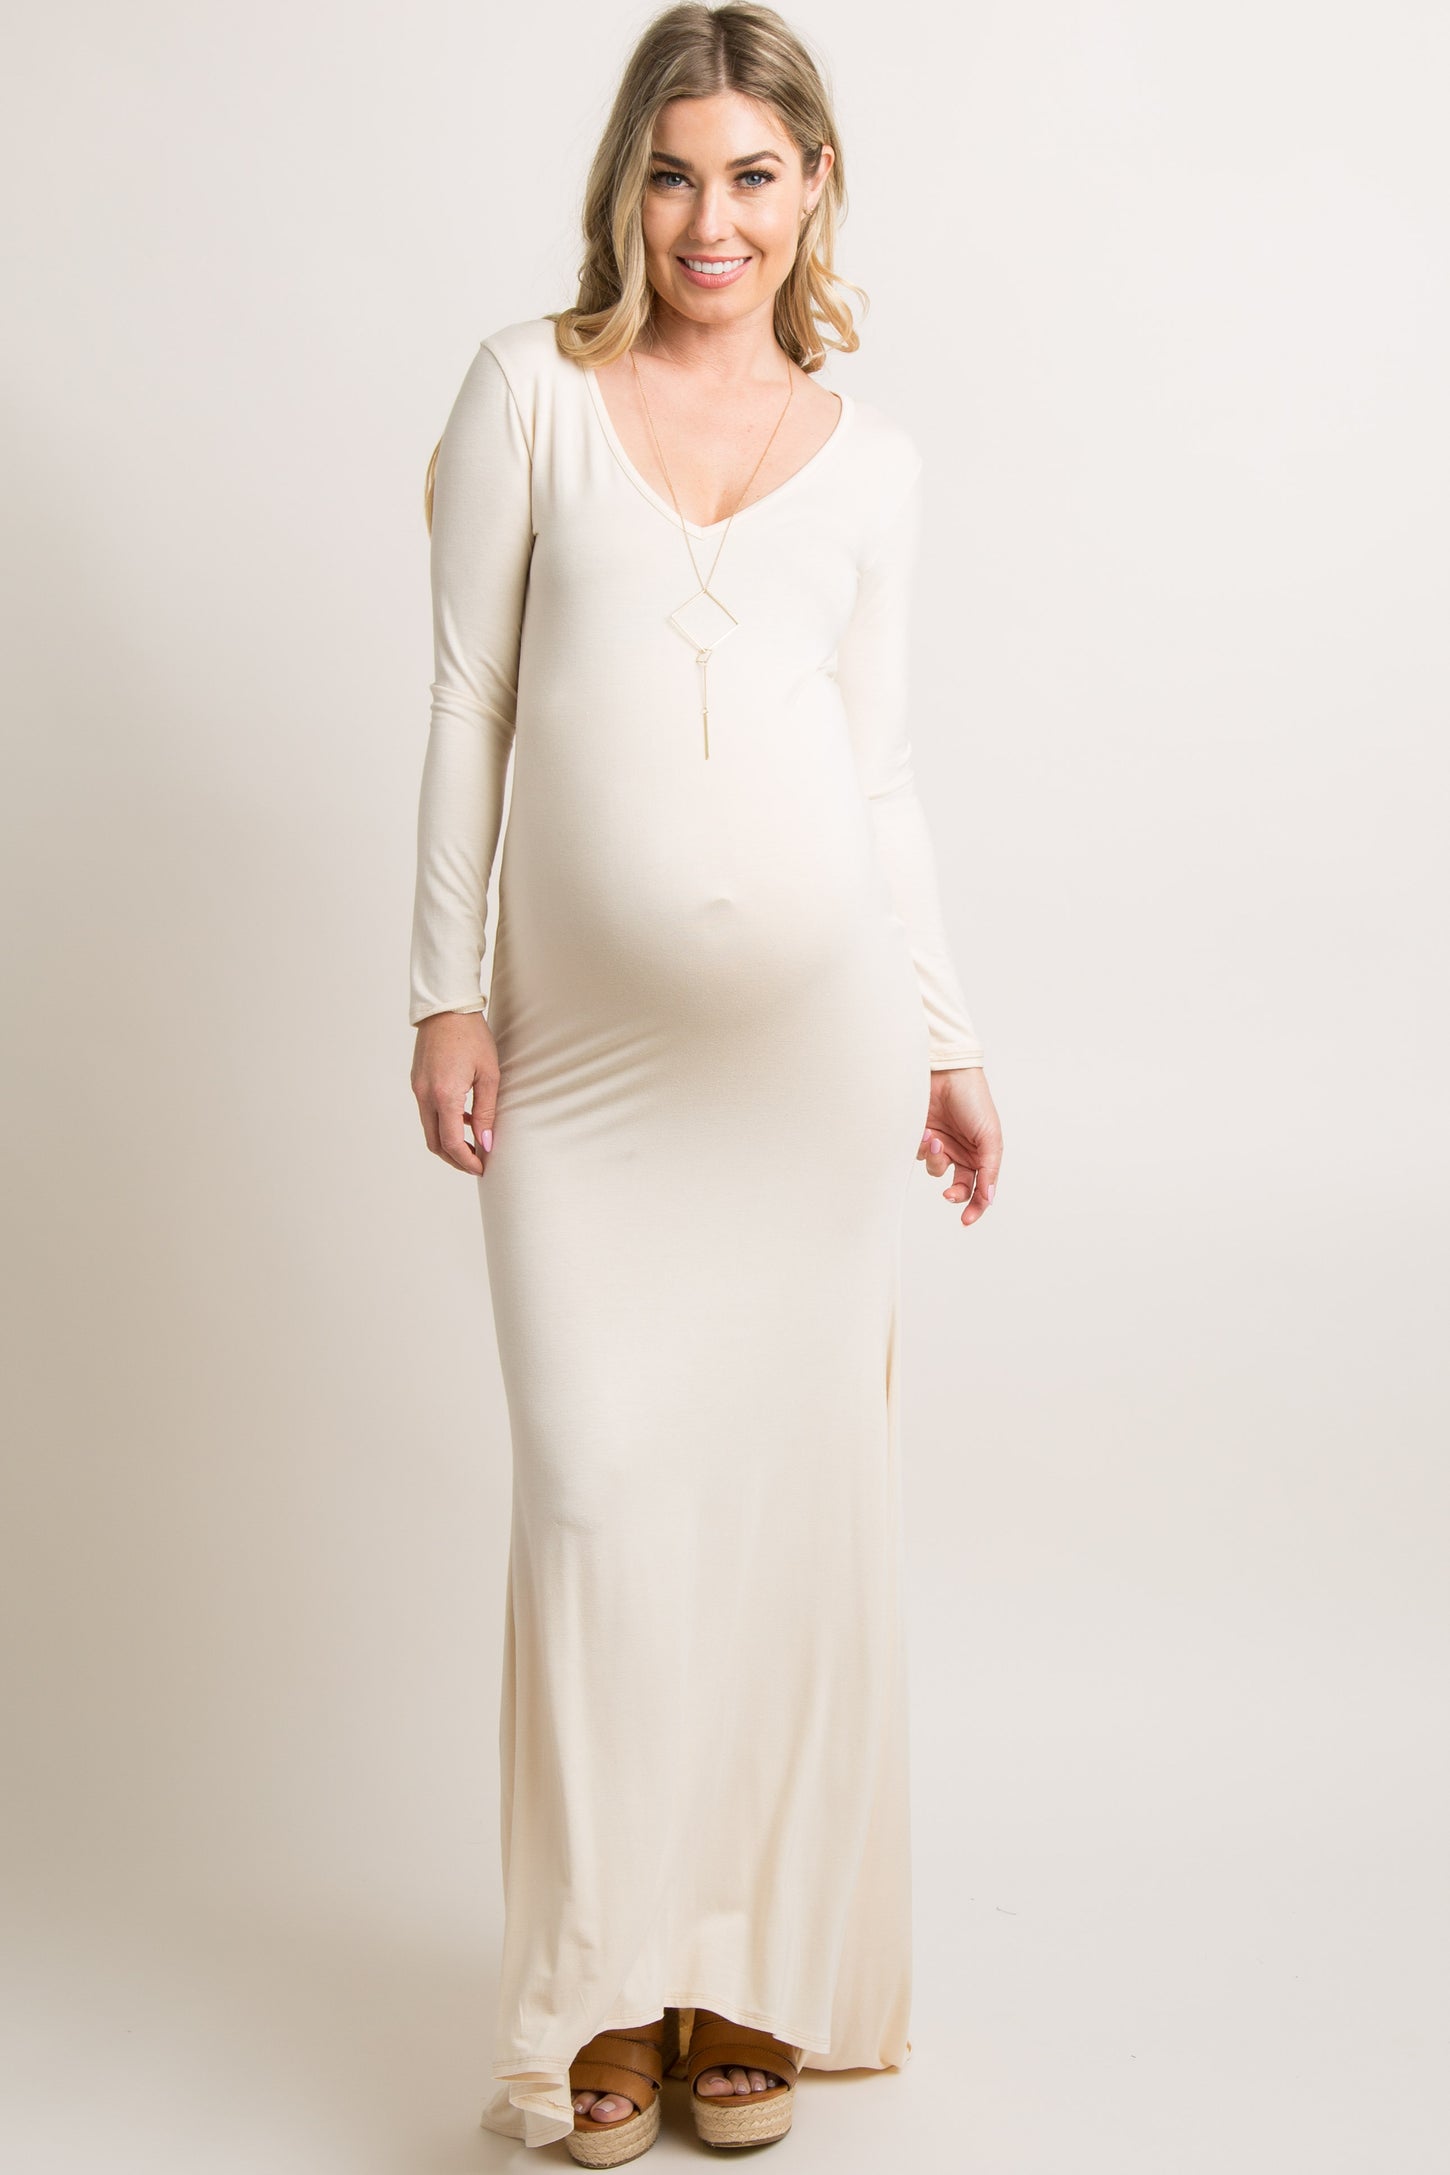 Women's Maternity Dress, Shop The One Shoulder Evening Dress Dress